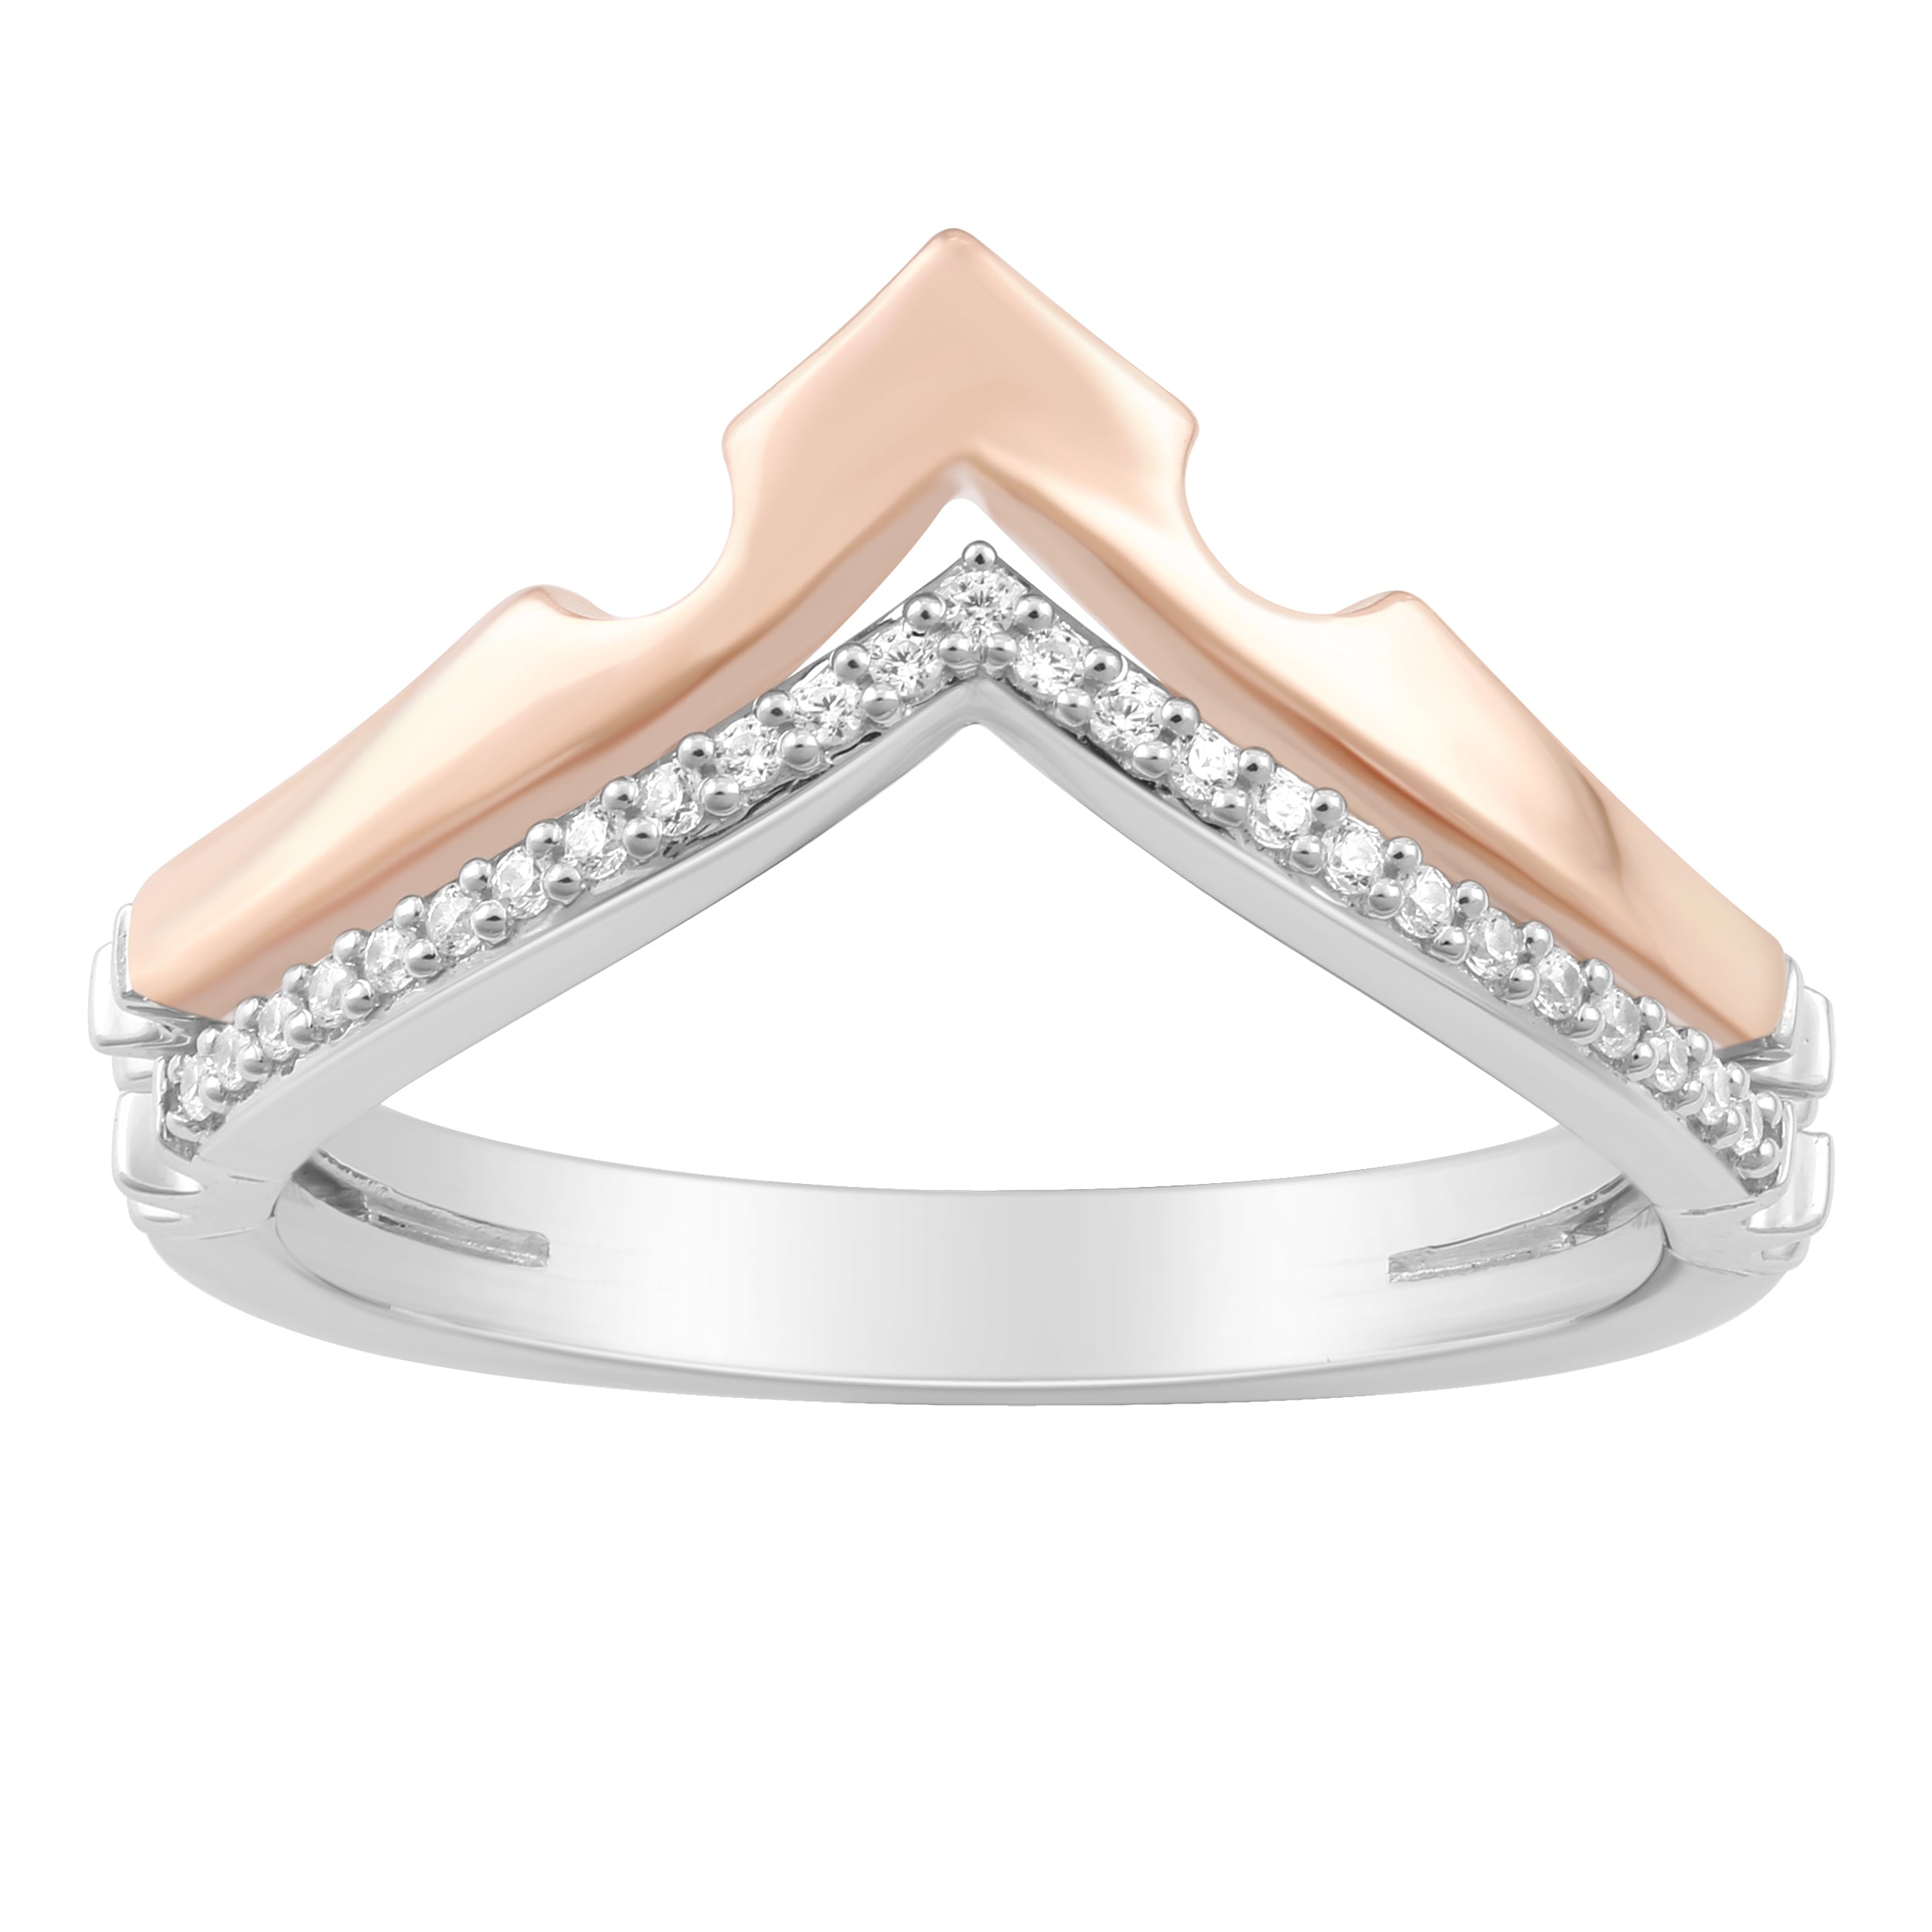 Buy Enhanced Design Diamond Ring Online